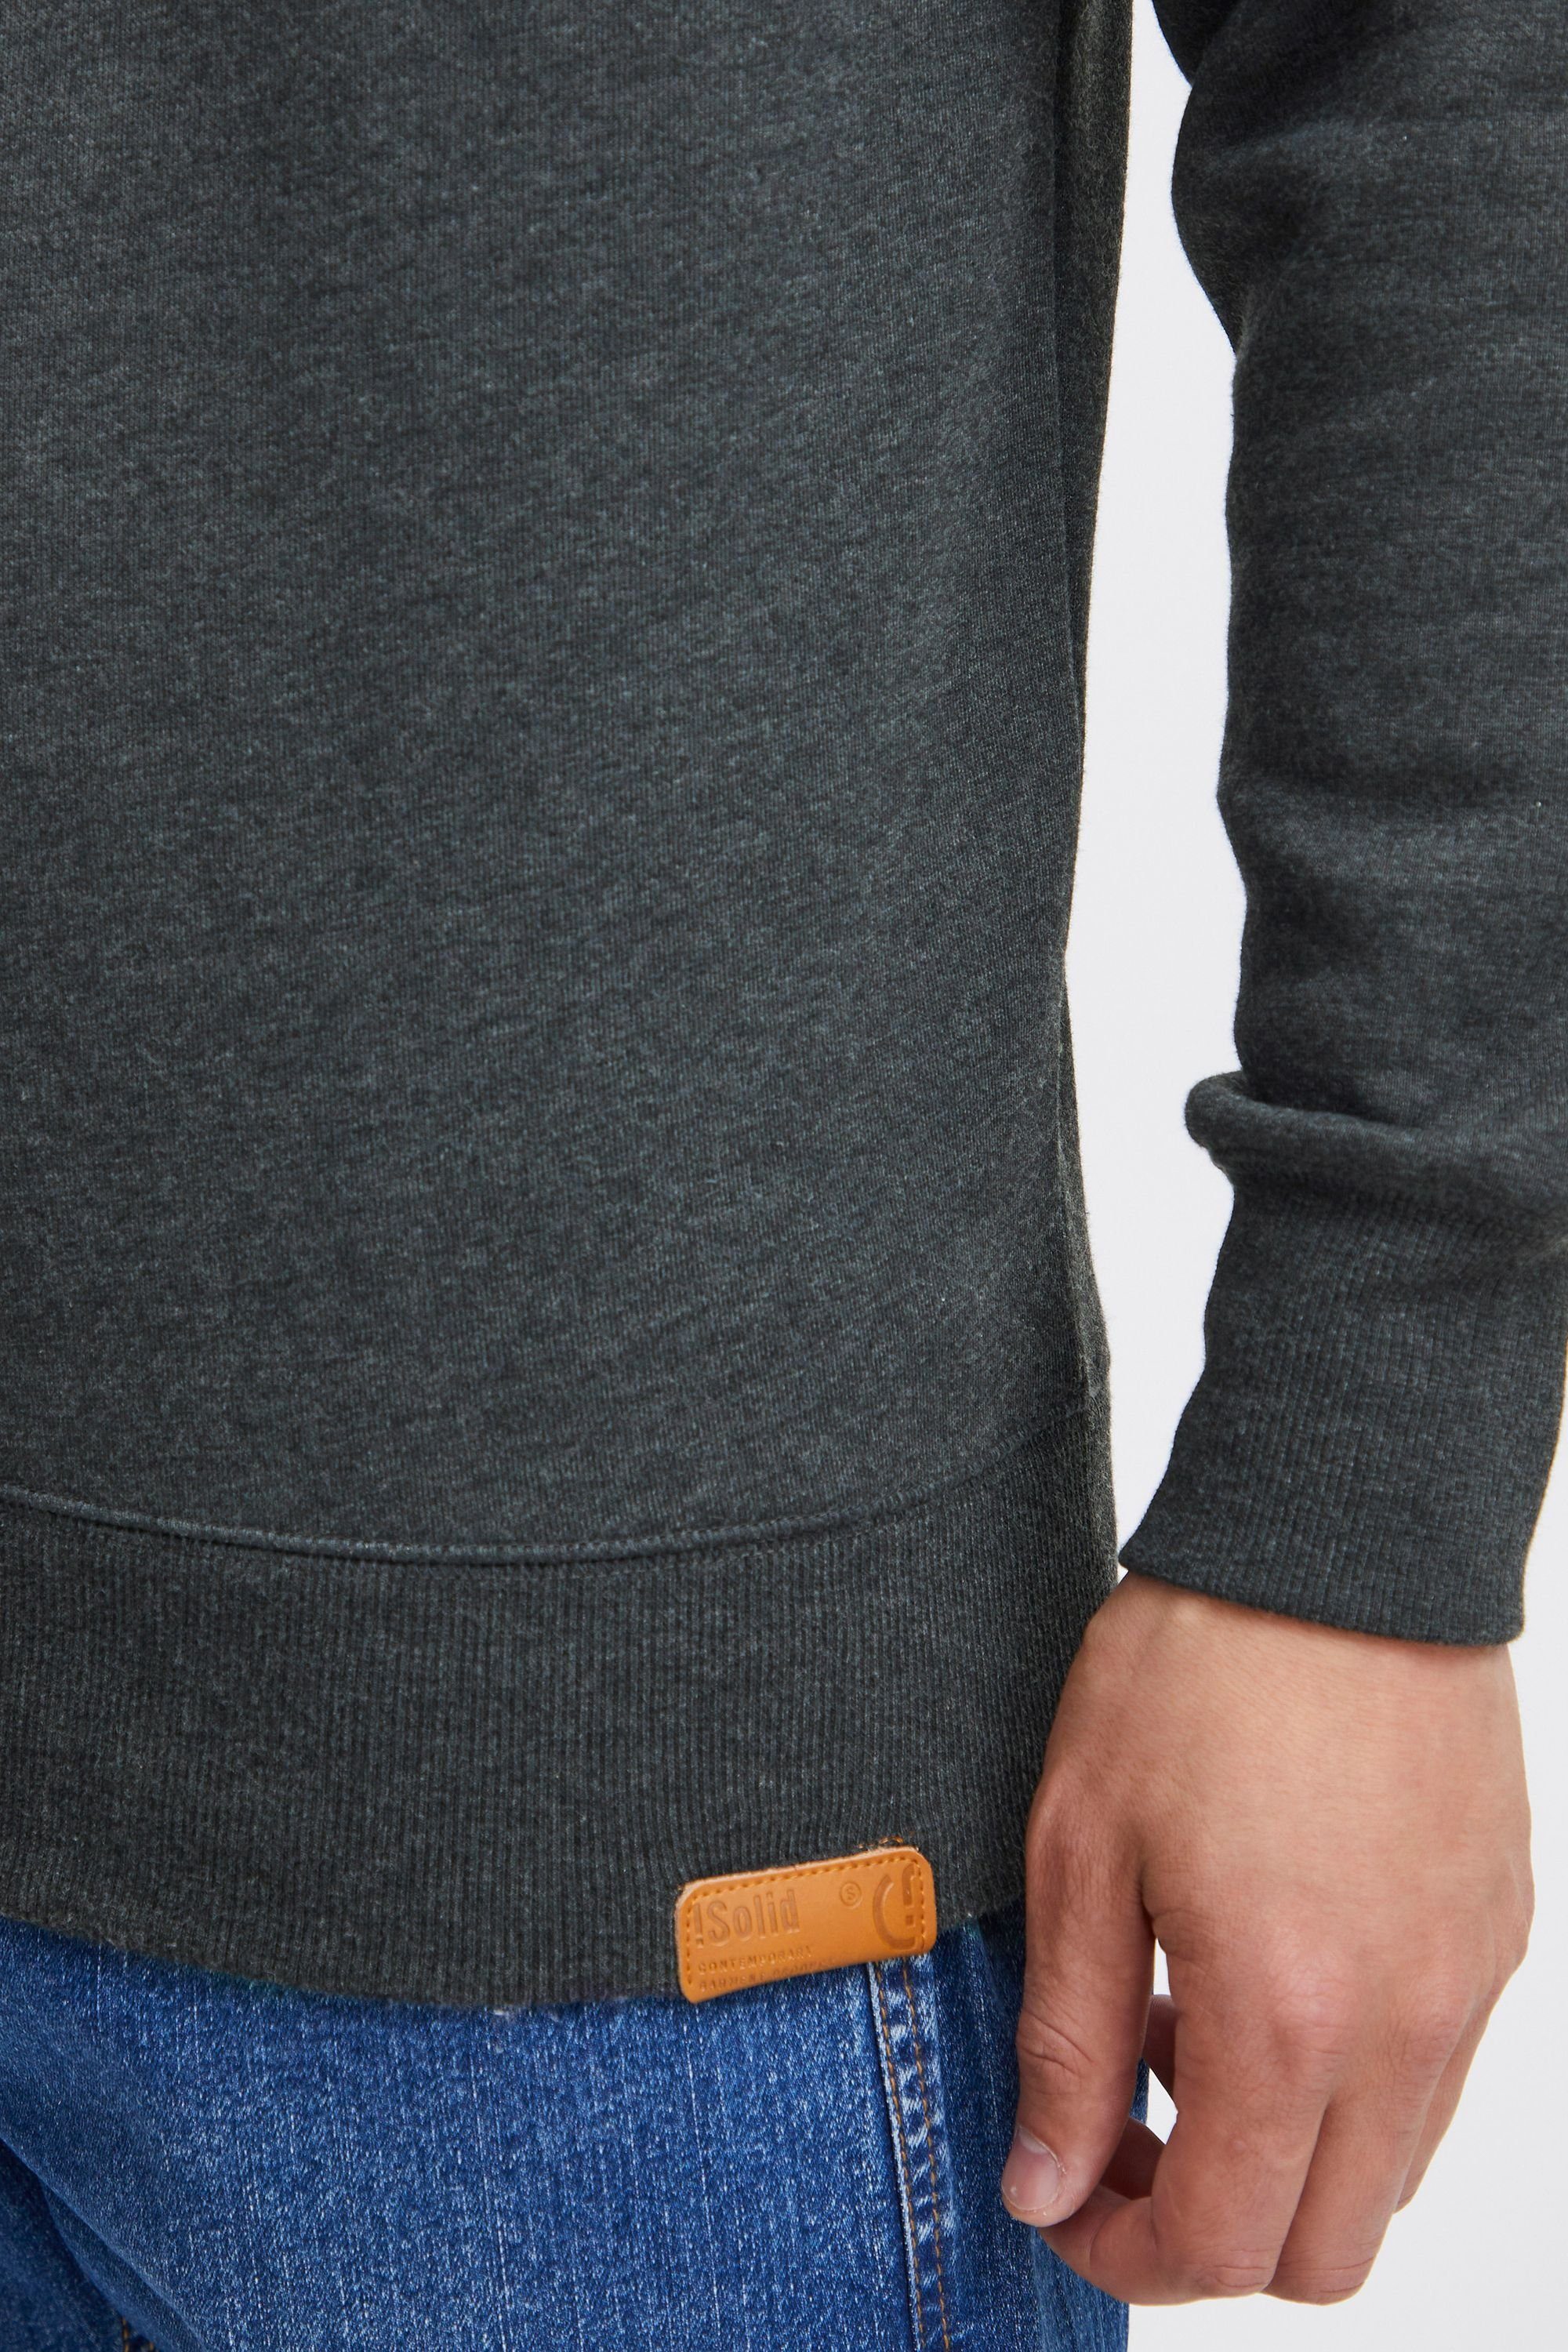 Solid Sweatshirt Grey (8288) Fleece-Innenseite Melange mit O-Neck SDTrip Sweatpullover Dark